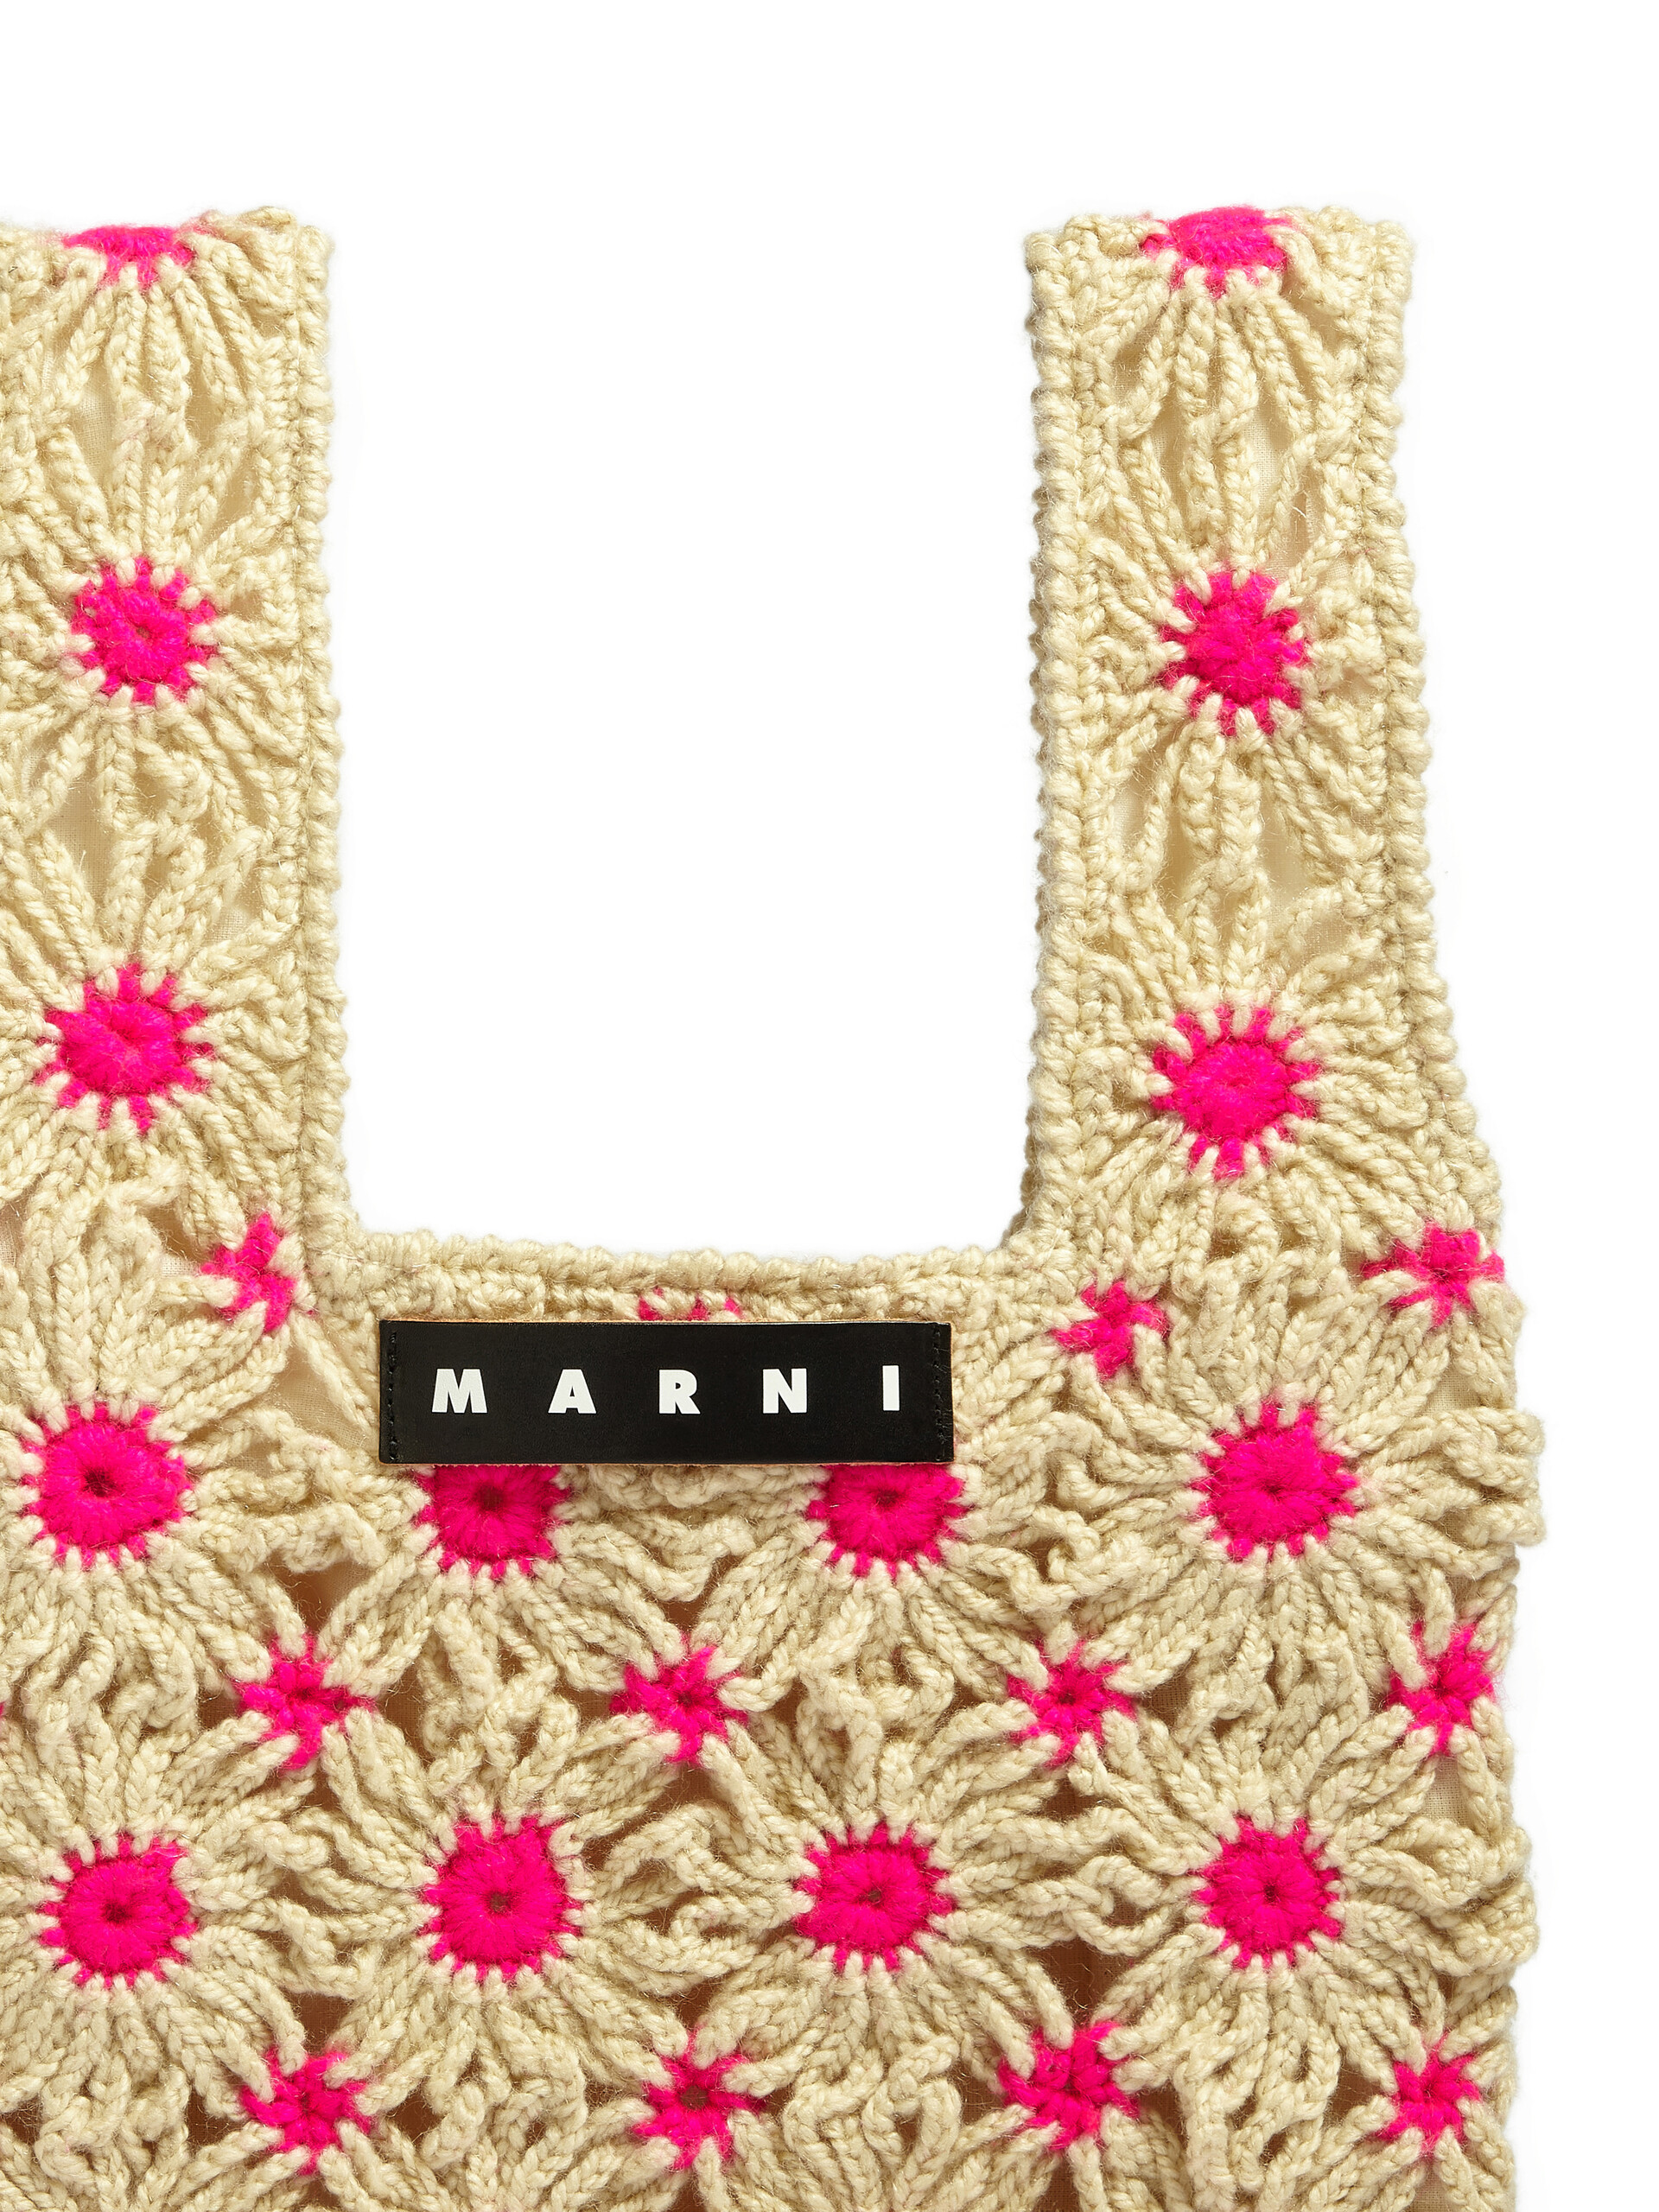 Borsa MARNI MARKET in poliestere crochet rosa - Borse - Image 4